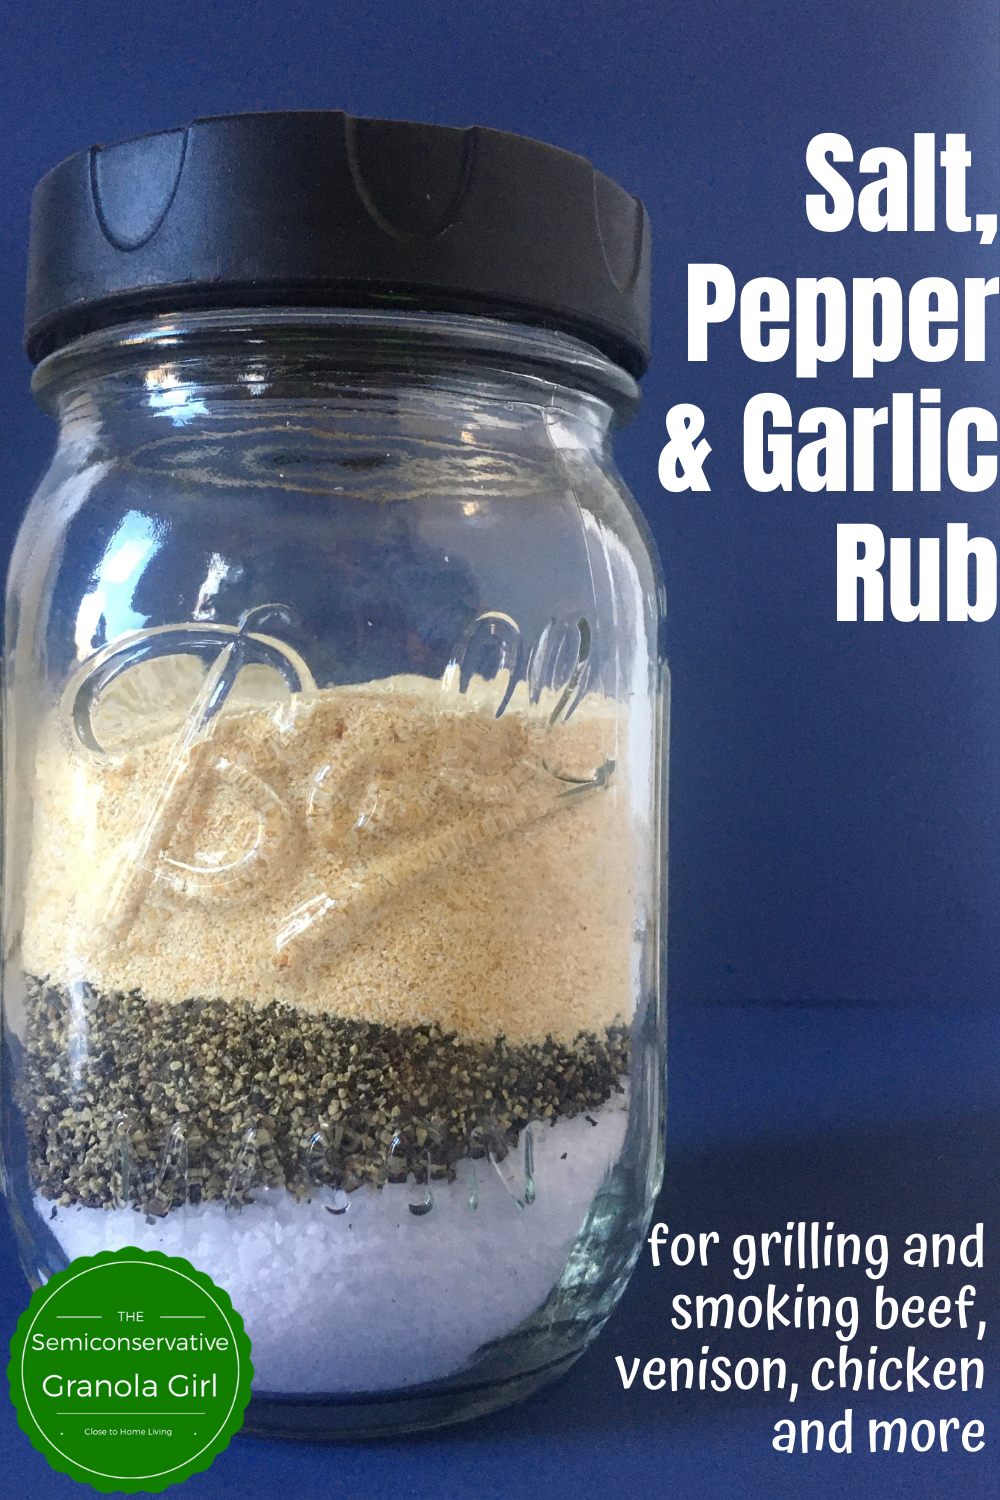 Lane's SPG Seasoning - Coarse Ground Salt Pepper Garlic Seasoning